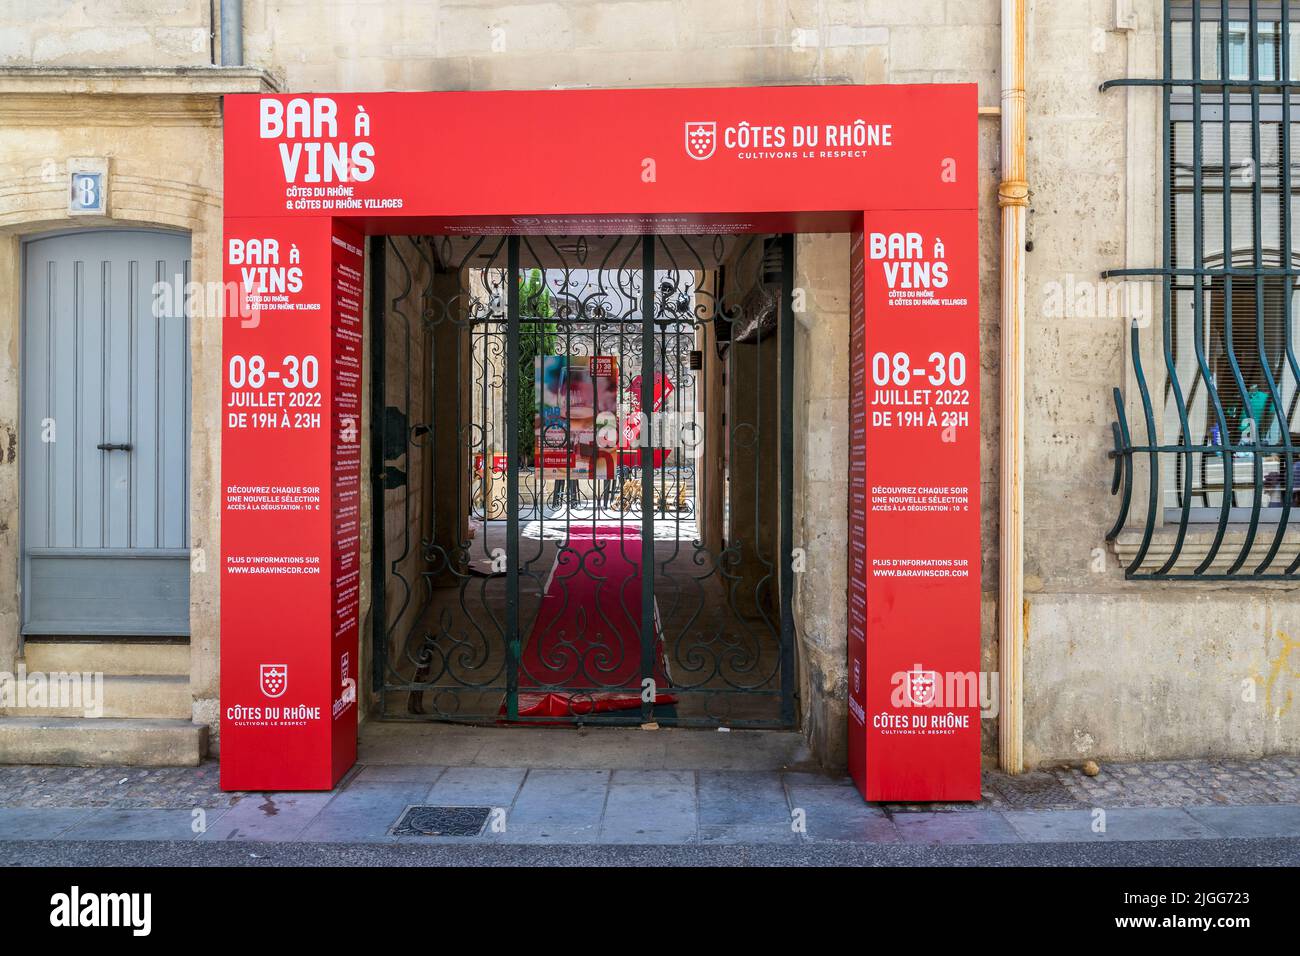 Ein auffallend roter Rahmen auf einem alten Stadthaus weist darauf hin: Drei Wochen lang werden in Avignon täglich Côtes du Rhône Weinproben durchgeführt. Avignon, Frankreich Stockfoto